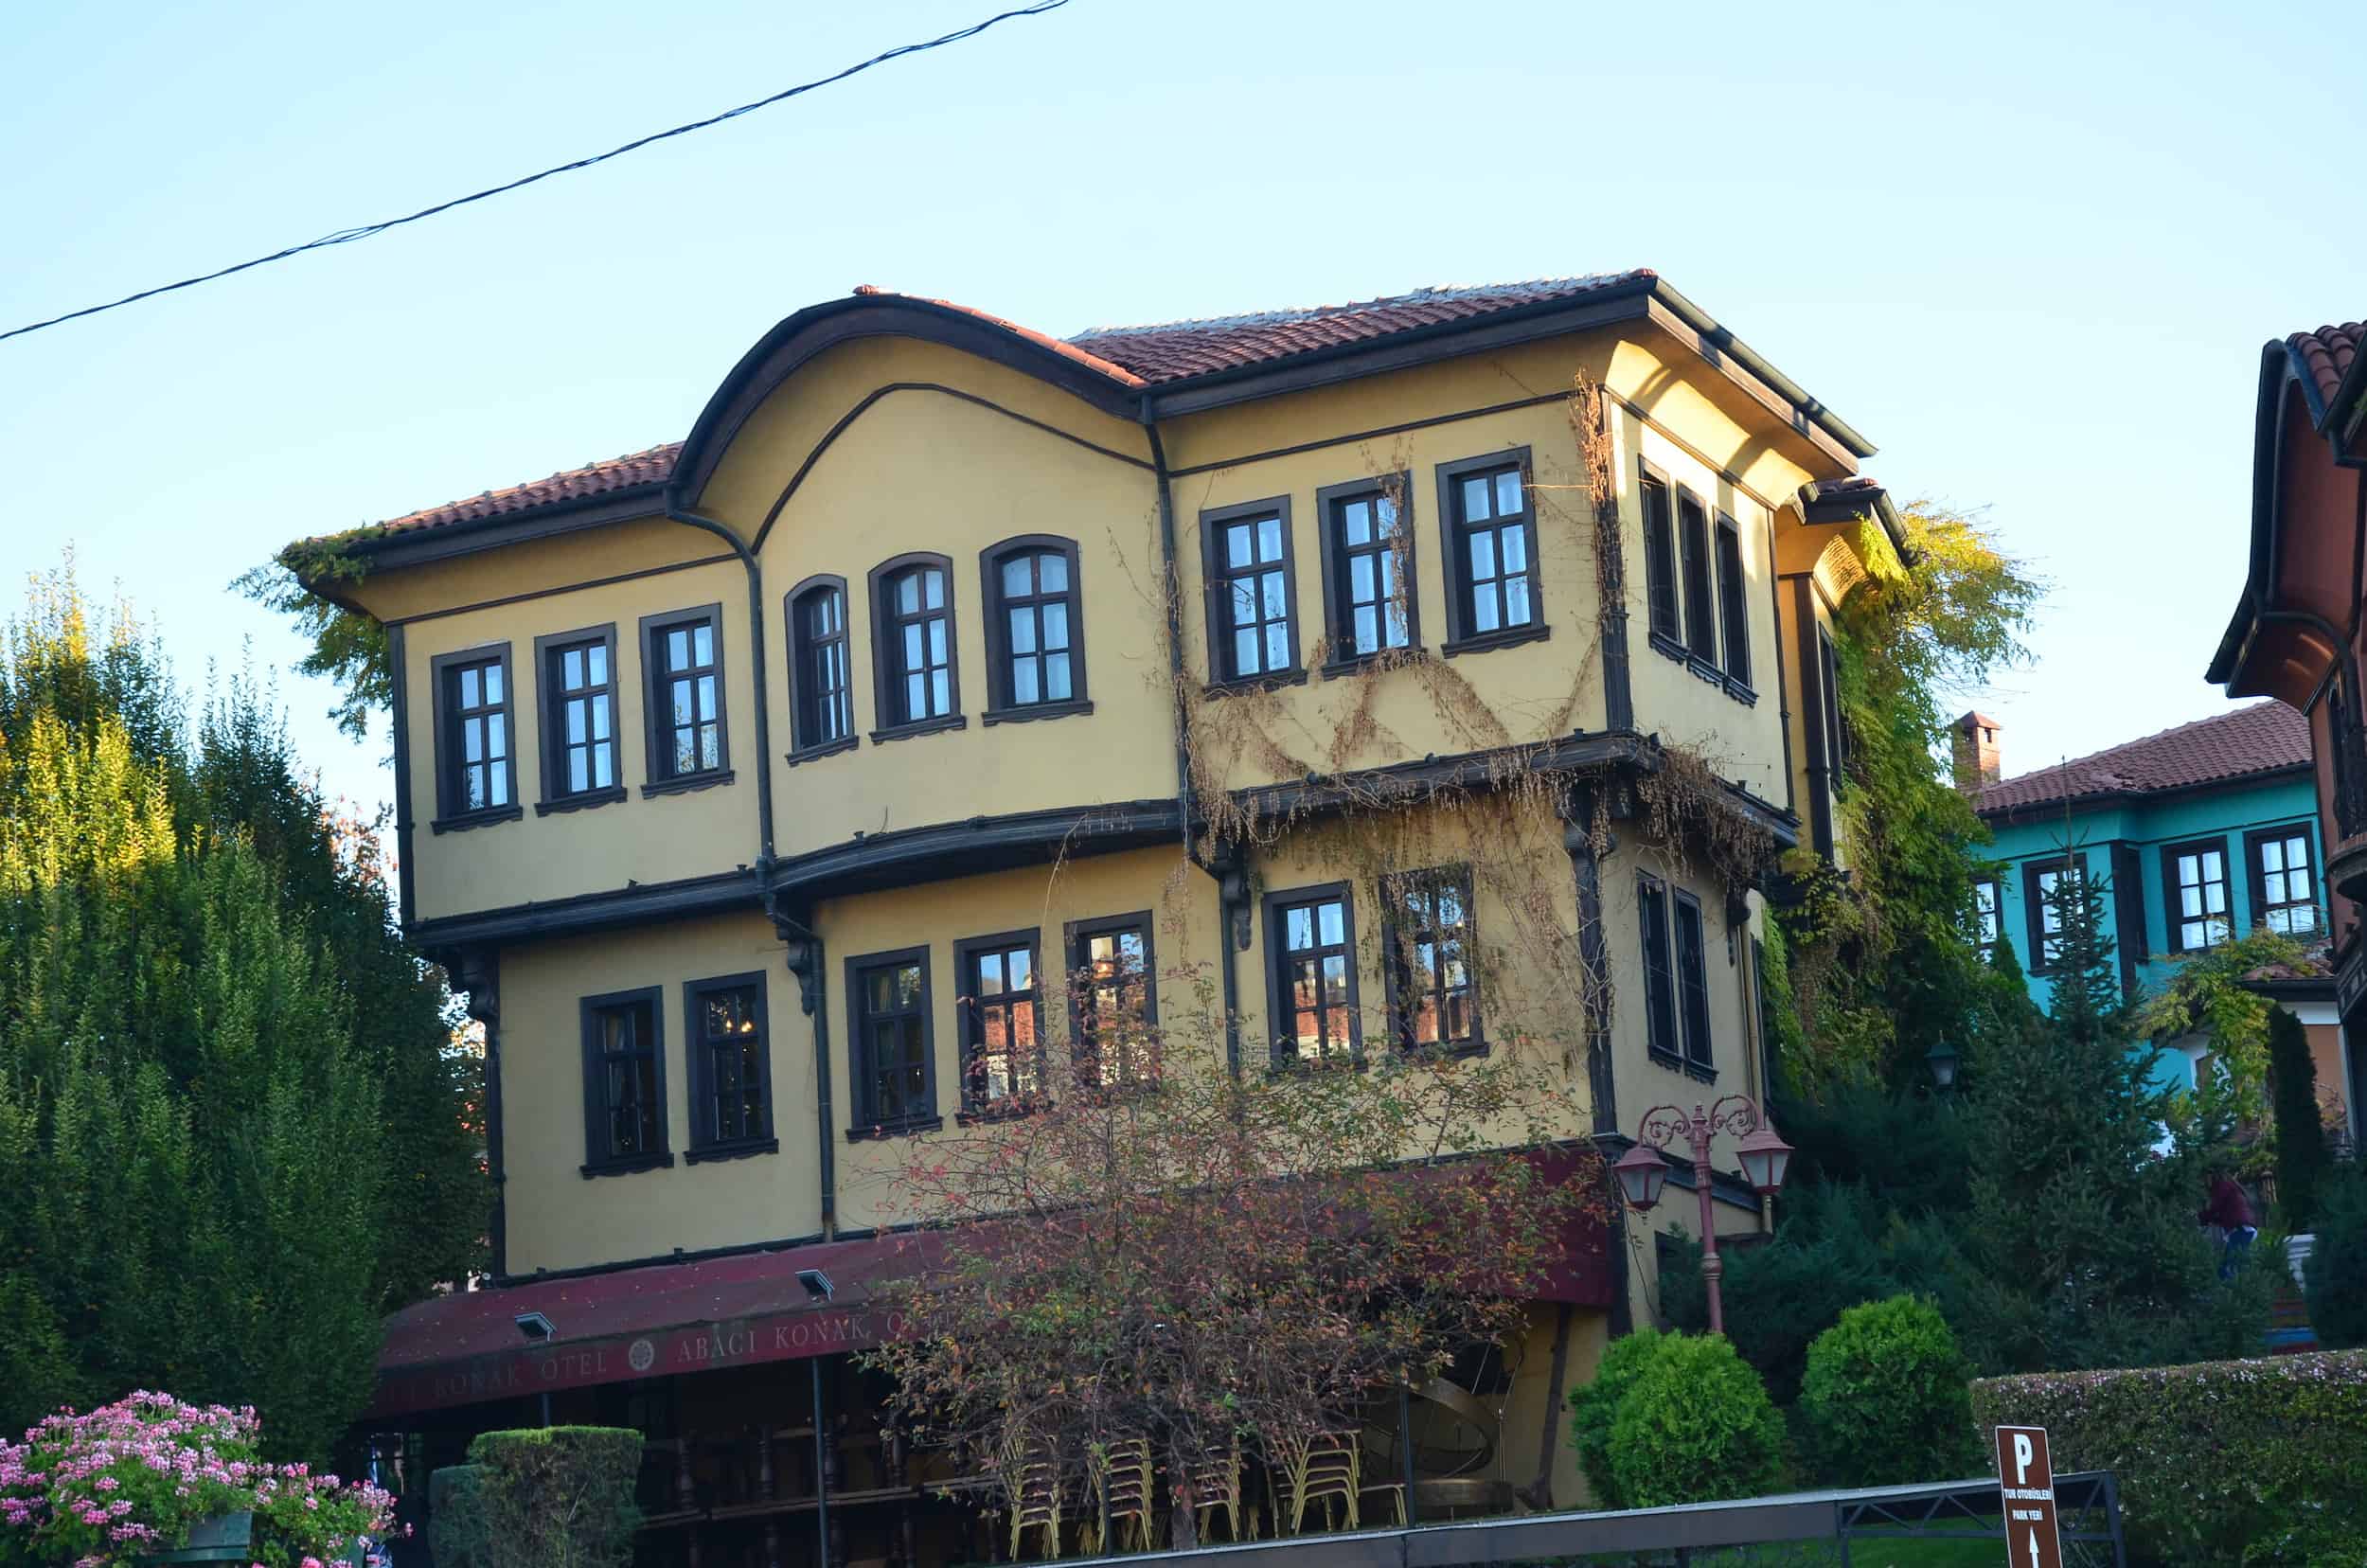 Abacı Konak Hotel in Odunpazarı, Eskişehir, Turkey